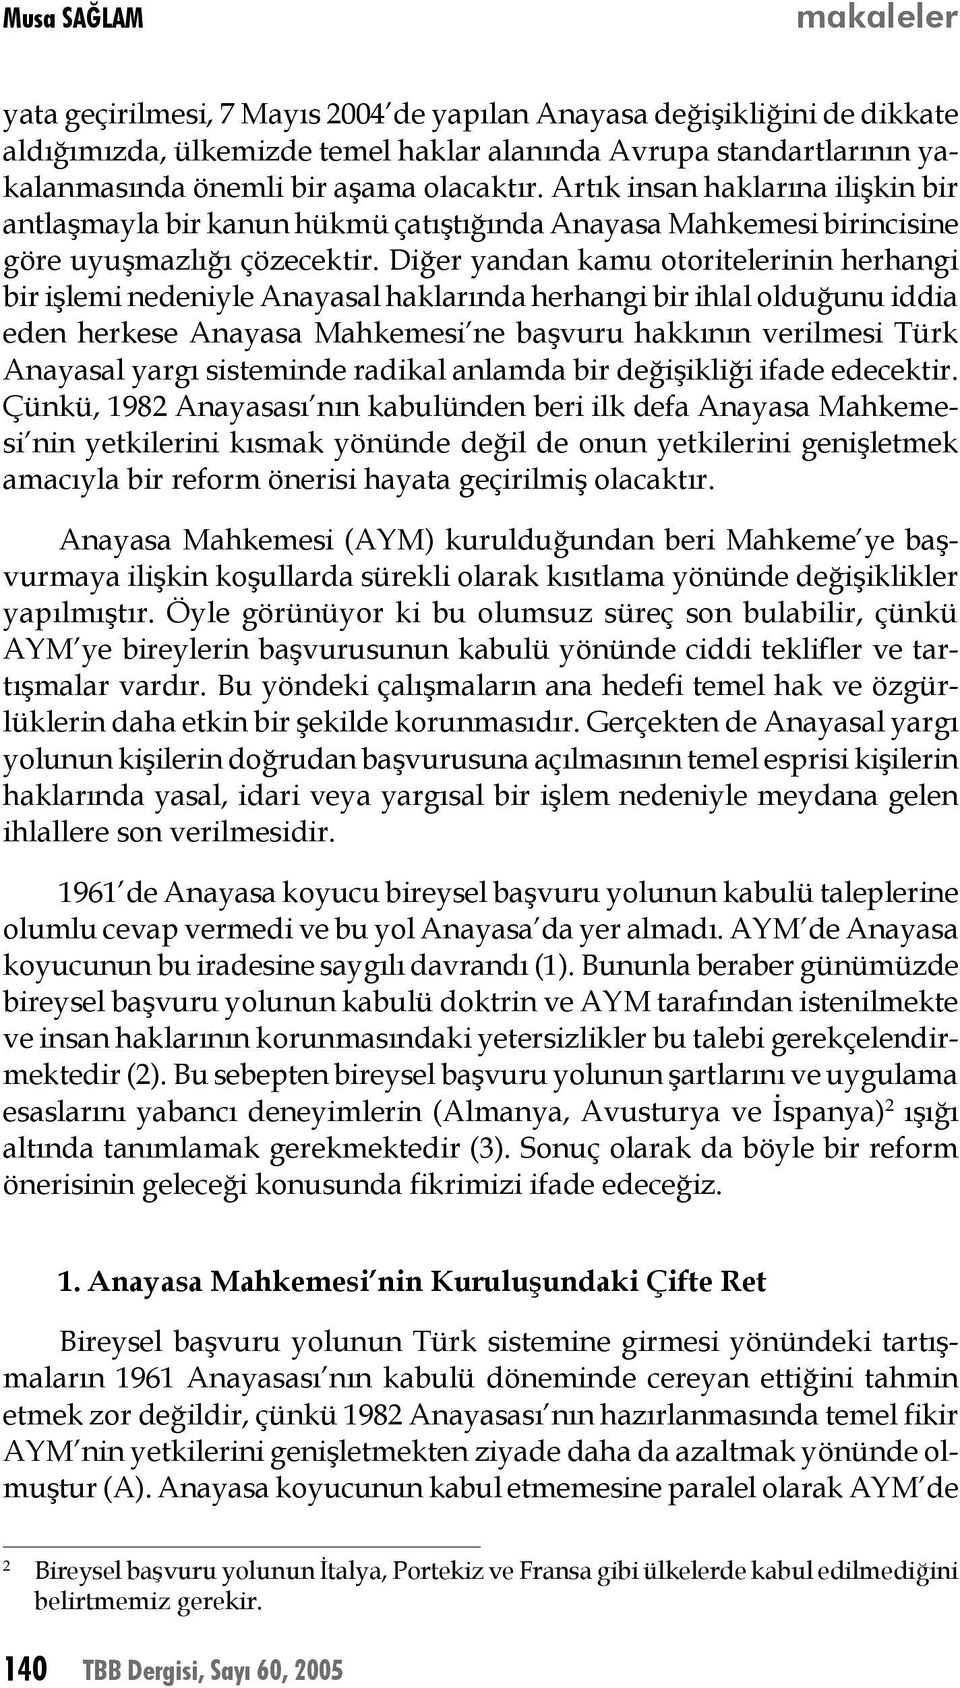 Diğer yandan kamu otoritelerinin herhangi bir işlemi nedeniyle Anayasal haklarında herhangi bir ihlal olduğunu iddia eden herkese Anayasa Mahkemesi ne başvuru hakkının verilmesi Türk Anayasal yargı